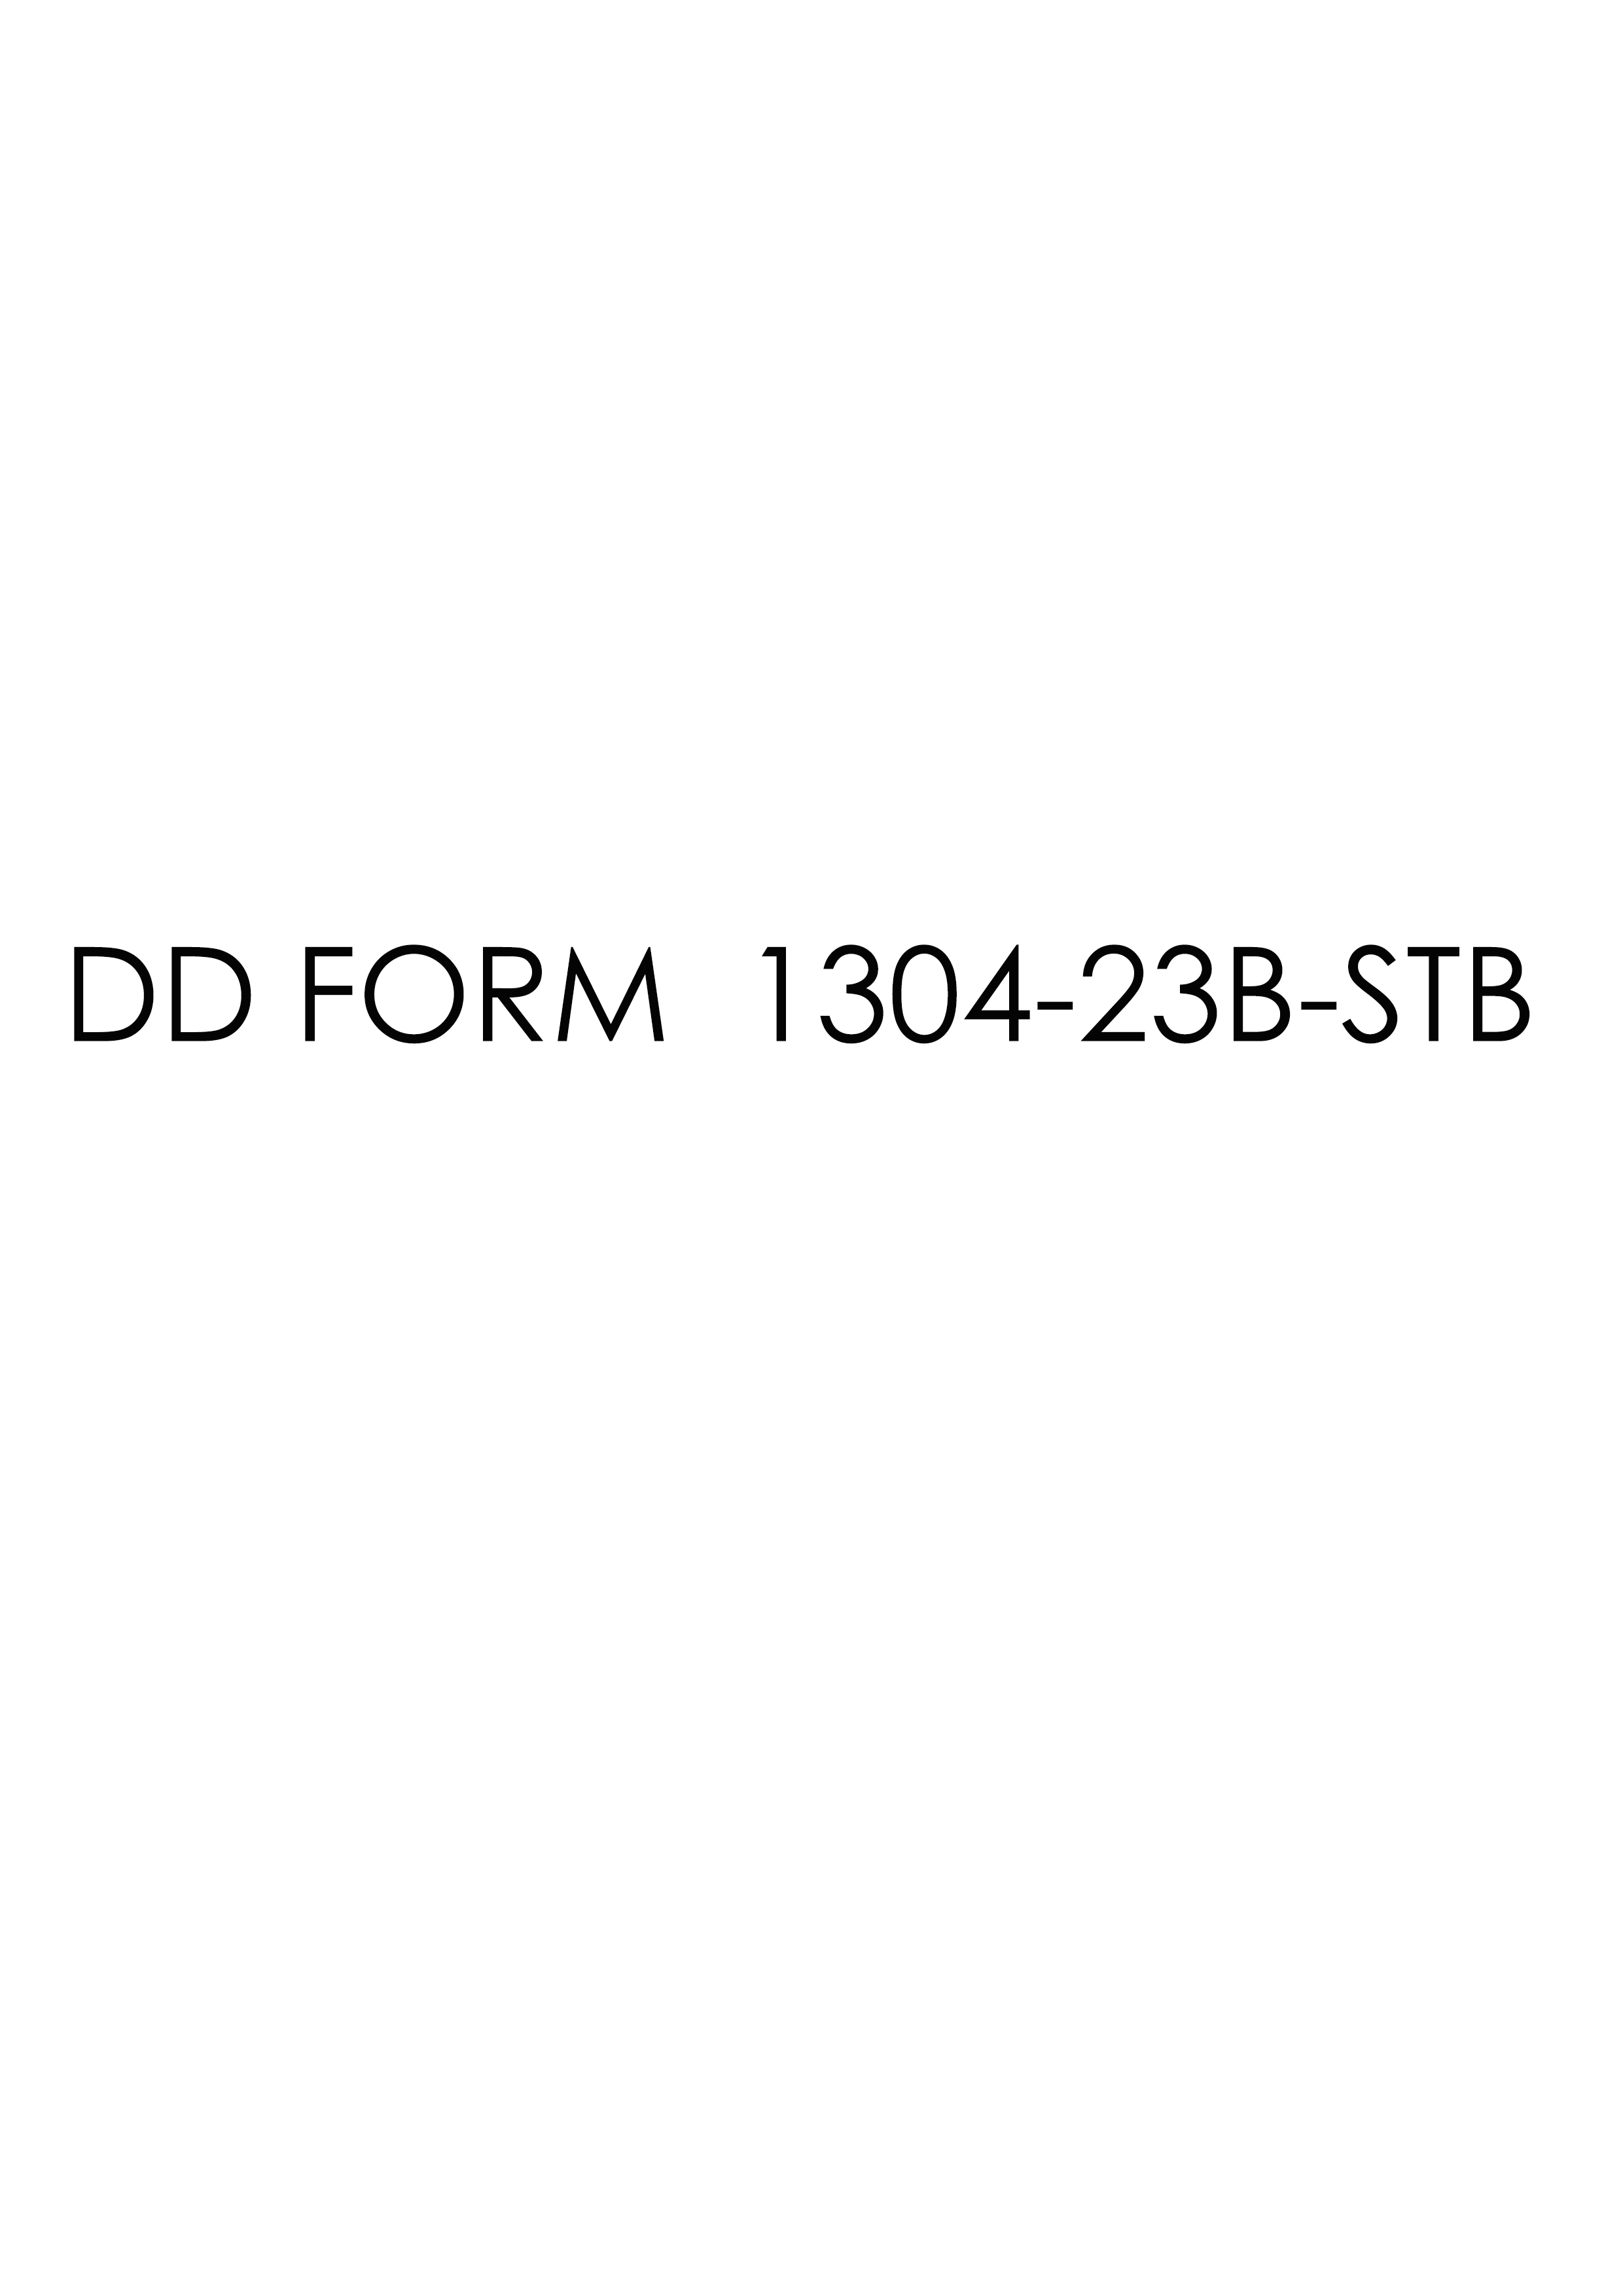 Download dd 1304-23B-STB Form